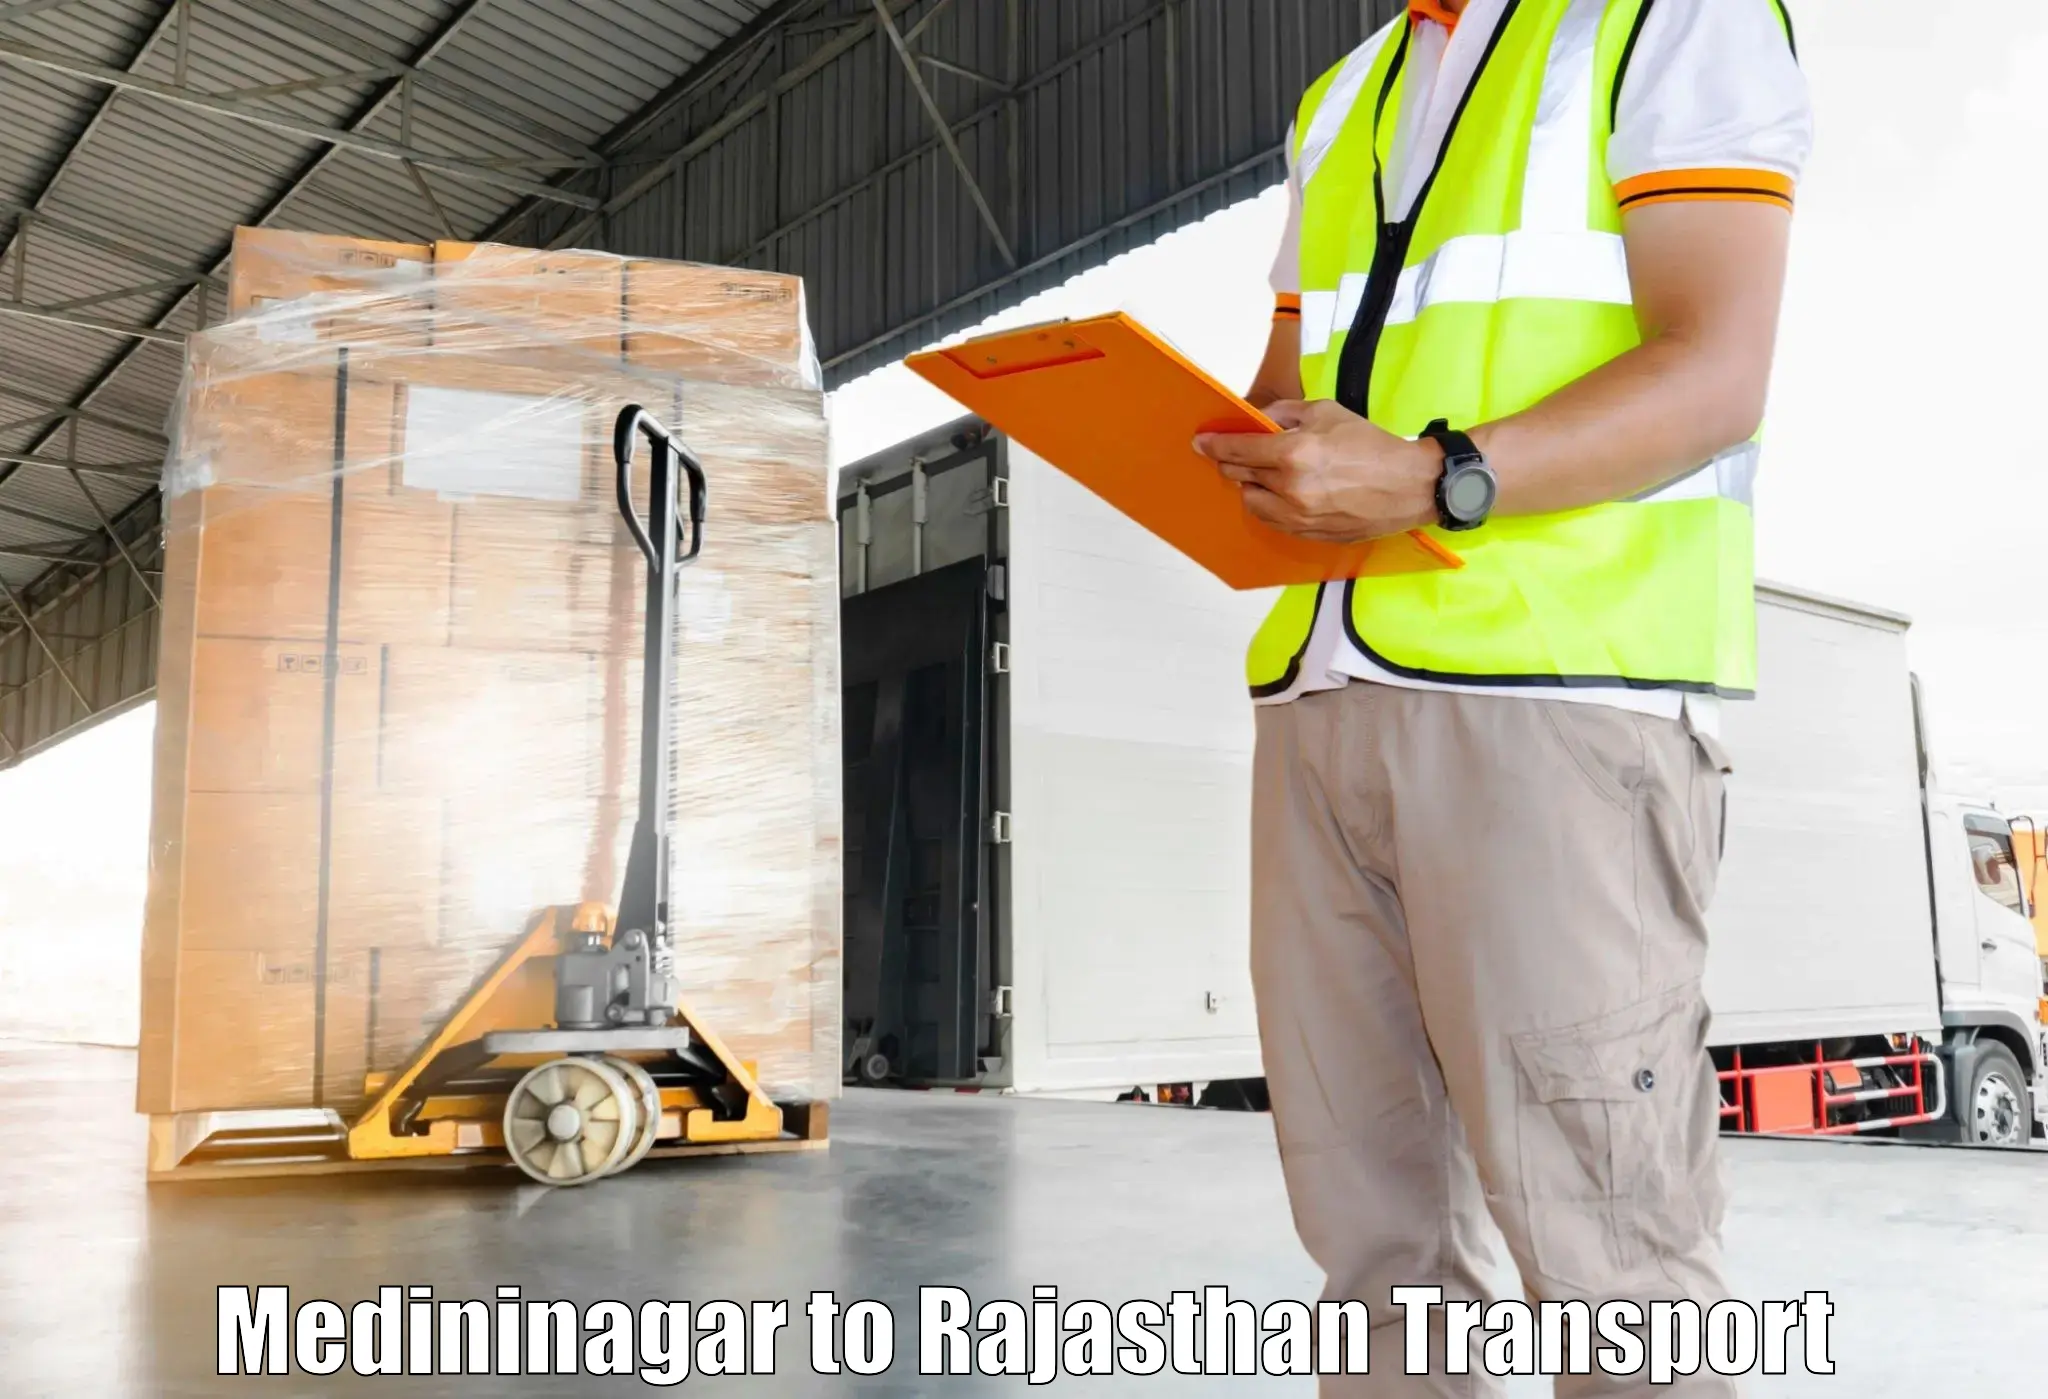 Logistics transportation services Medininagar to Bijainagar